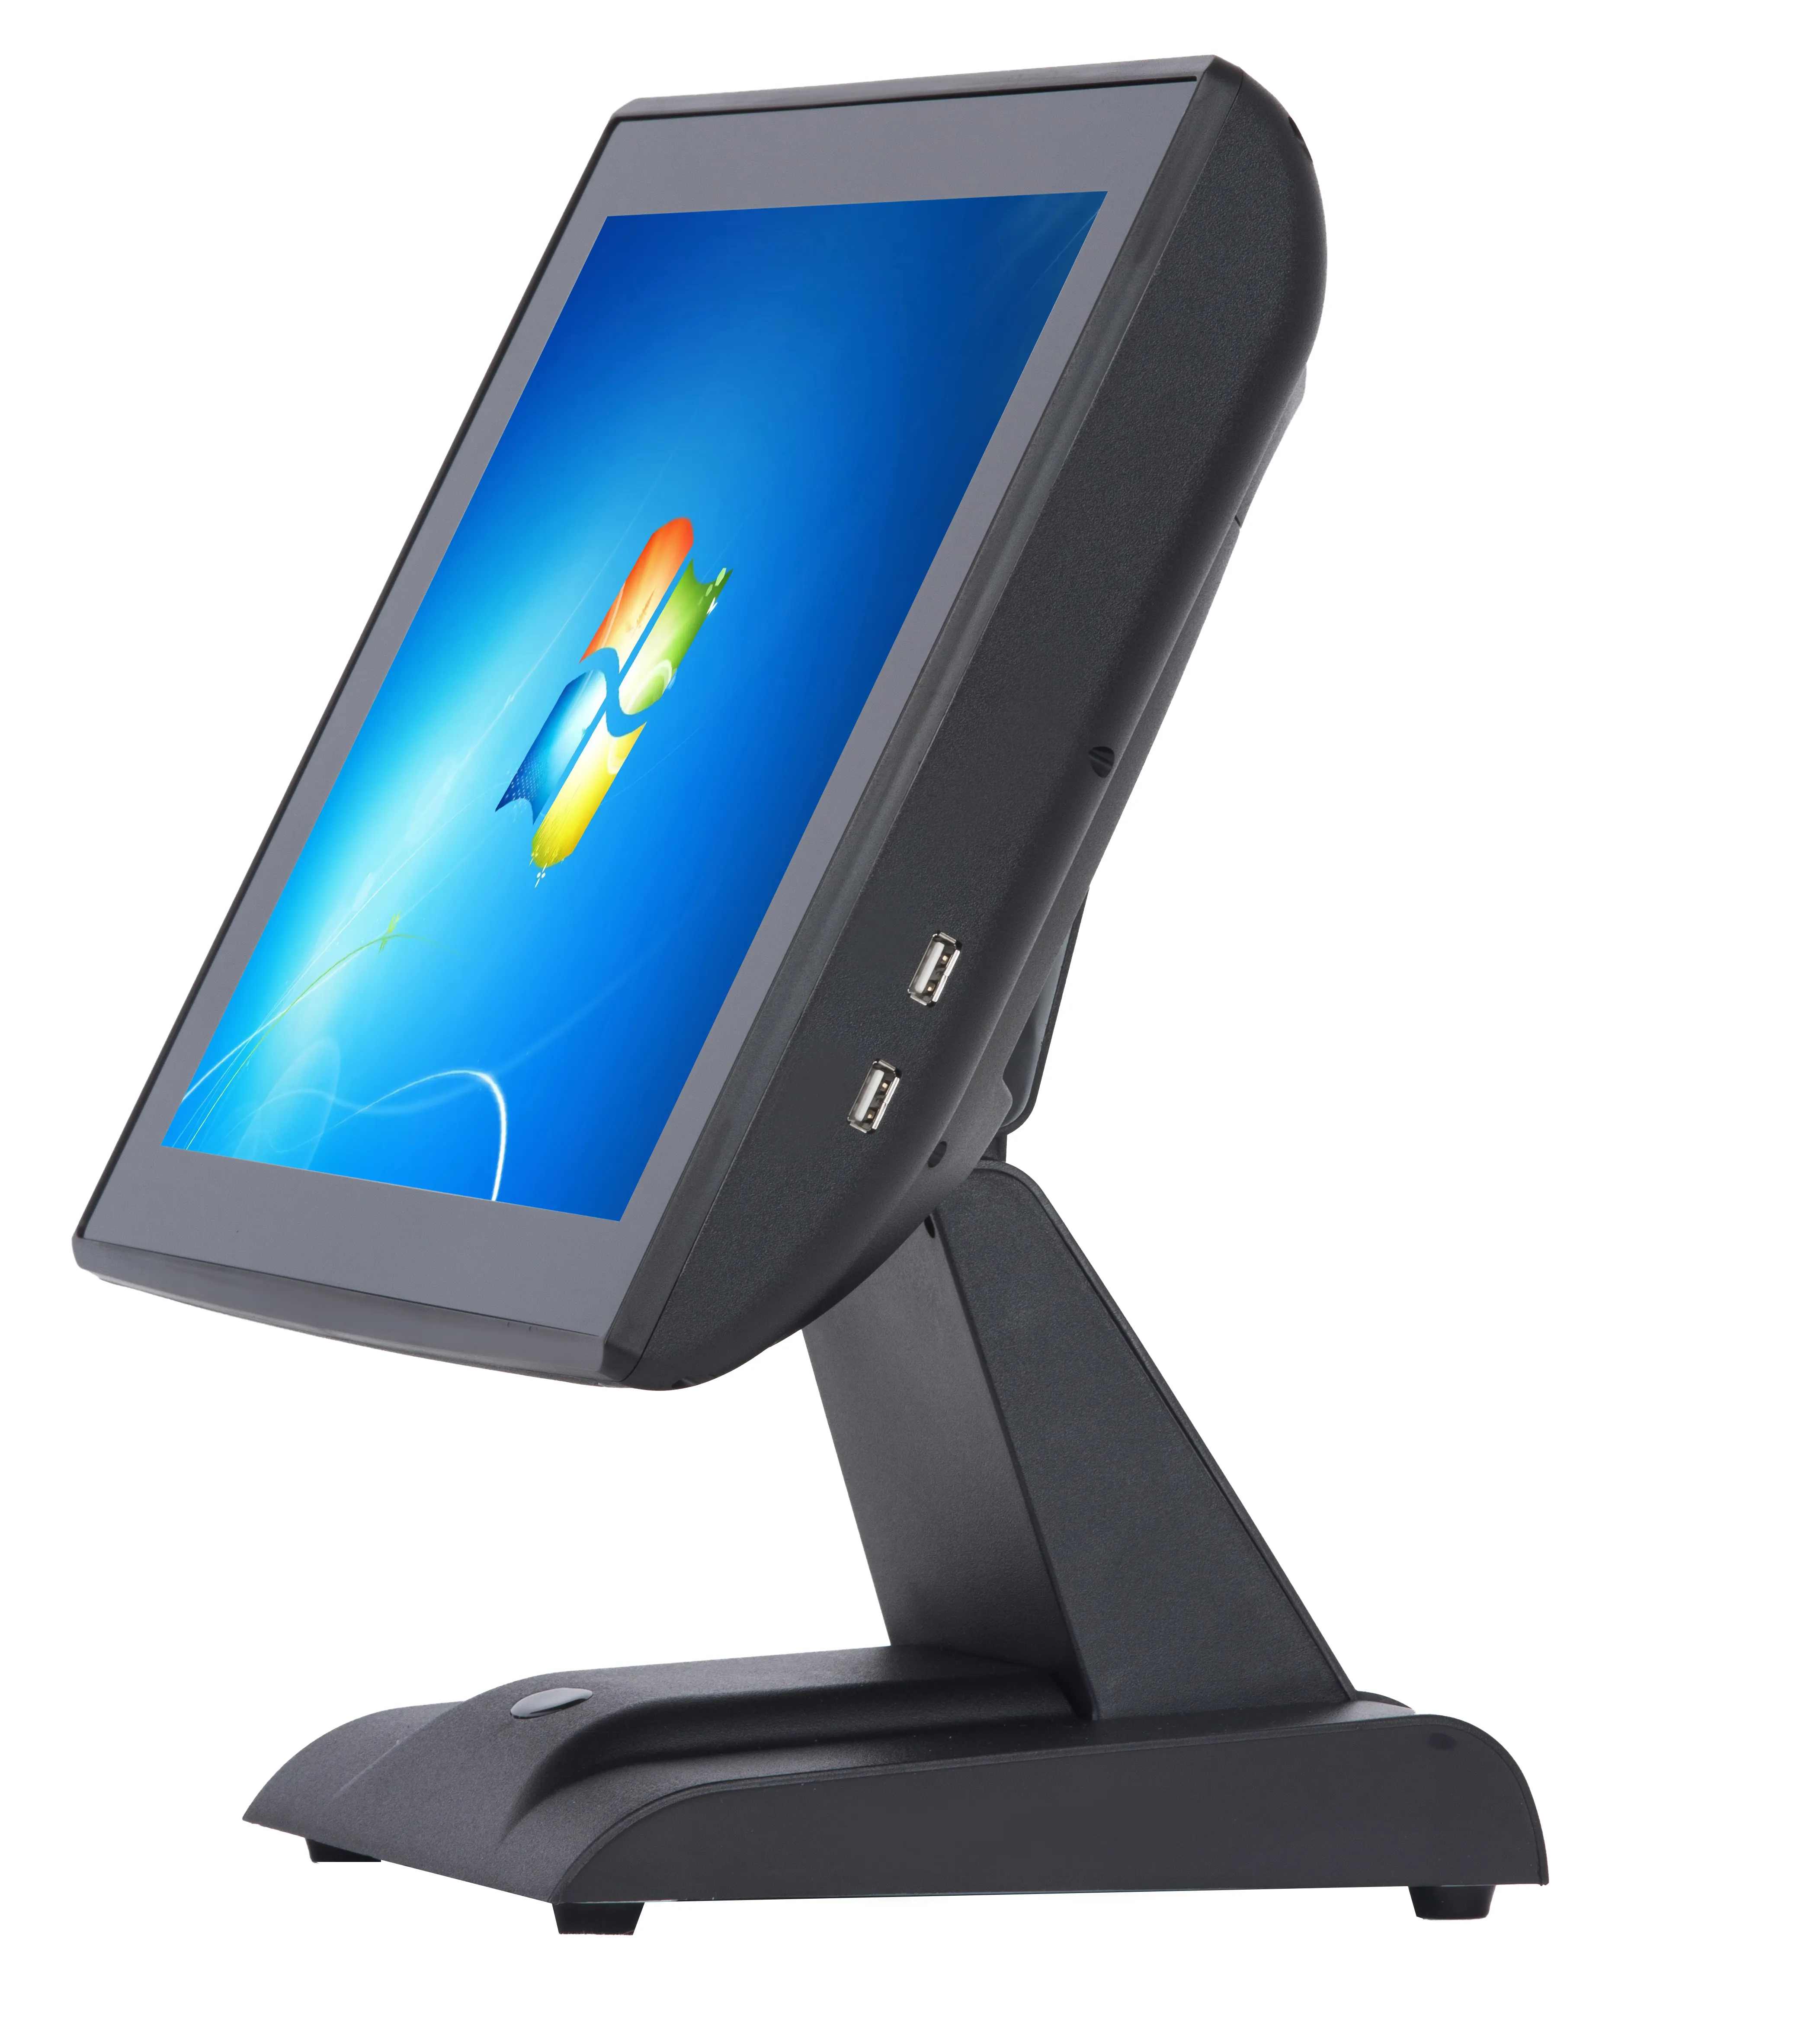 15 인치 터치 스크린 현금 등록기 슈퍼마켓 pos 기계 용 와이파이 윈도우/안드로이드 시스템과 소매 POS 시스템